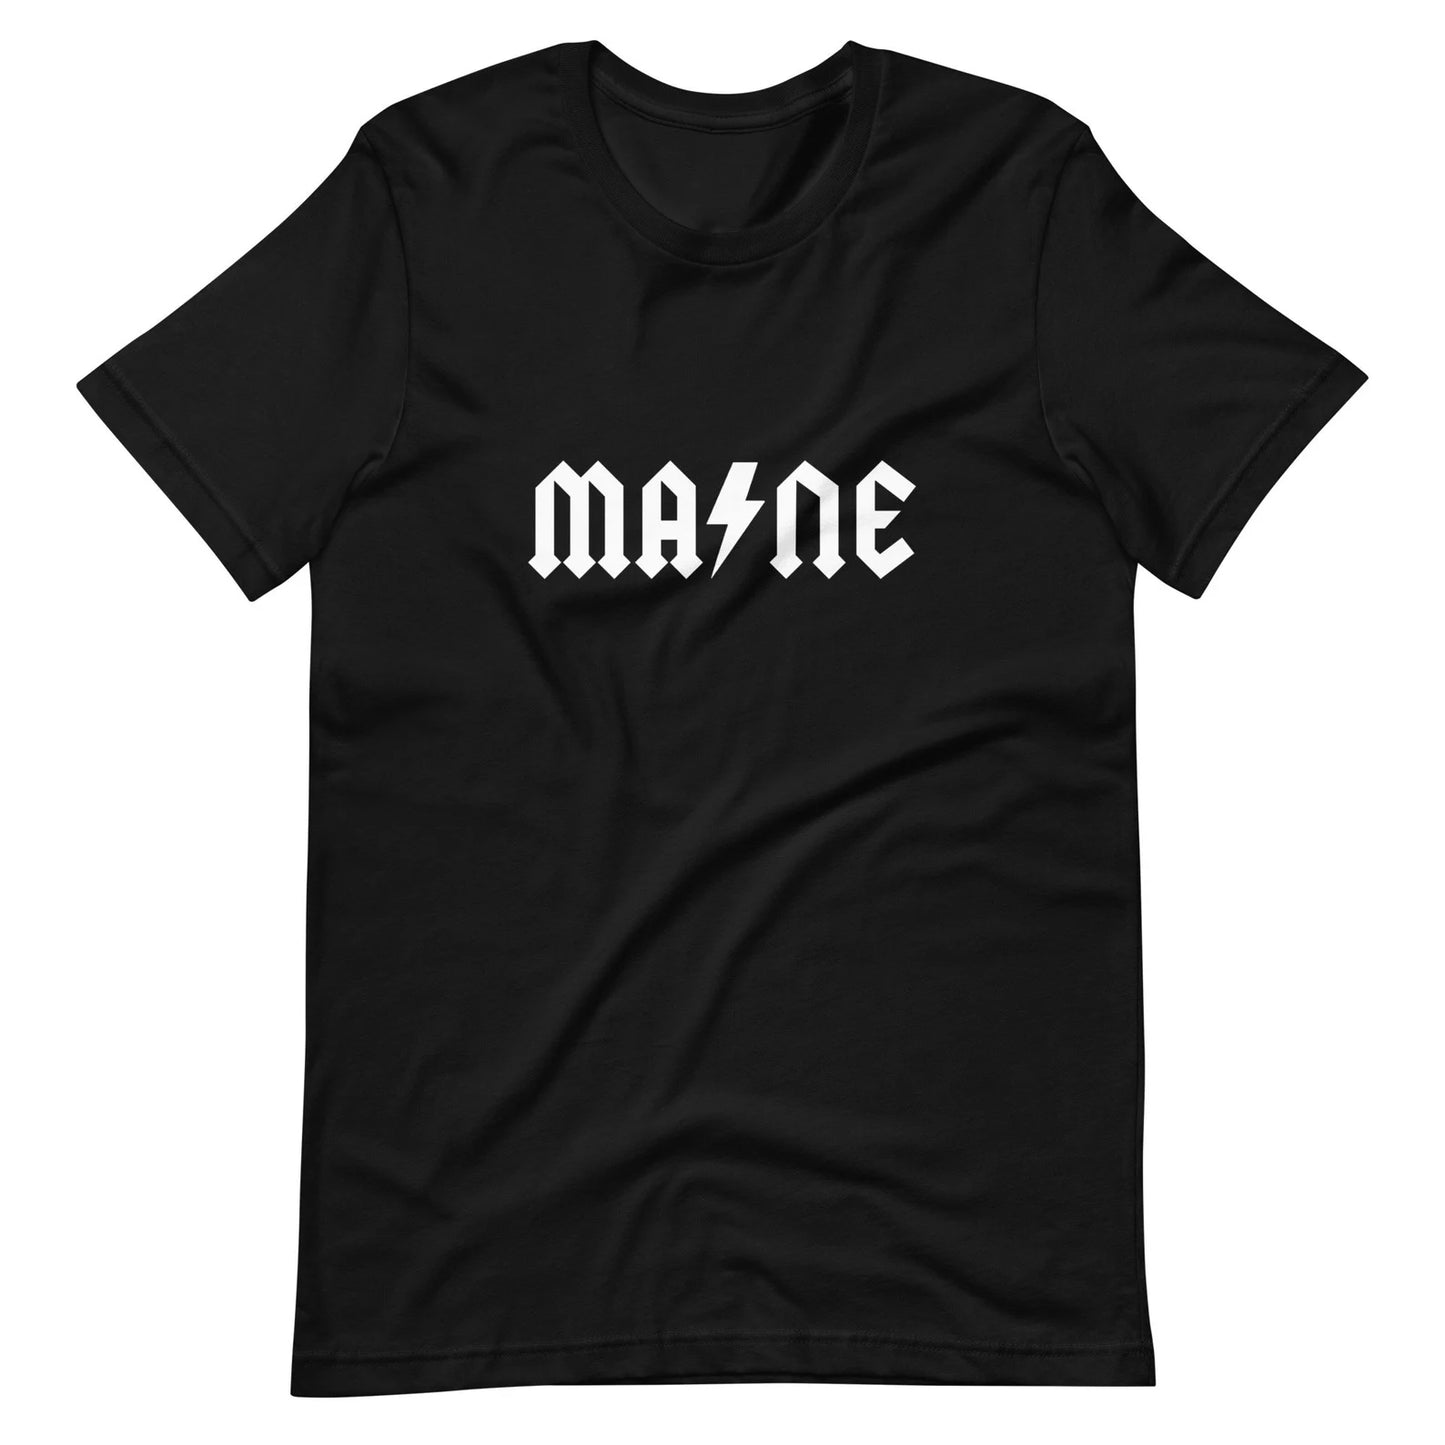 Maine ACDC Shirt - Maine Rock Band T-Shirt